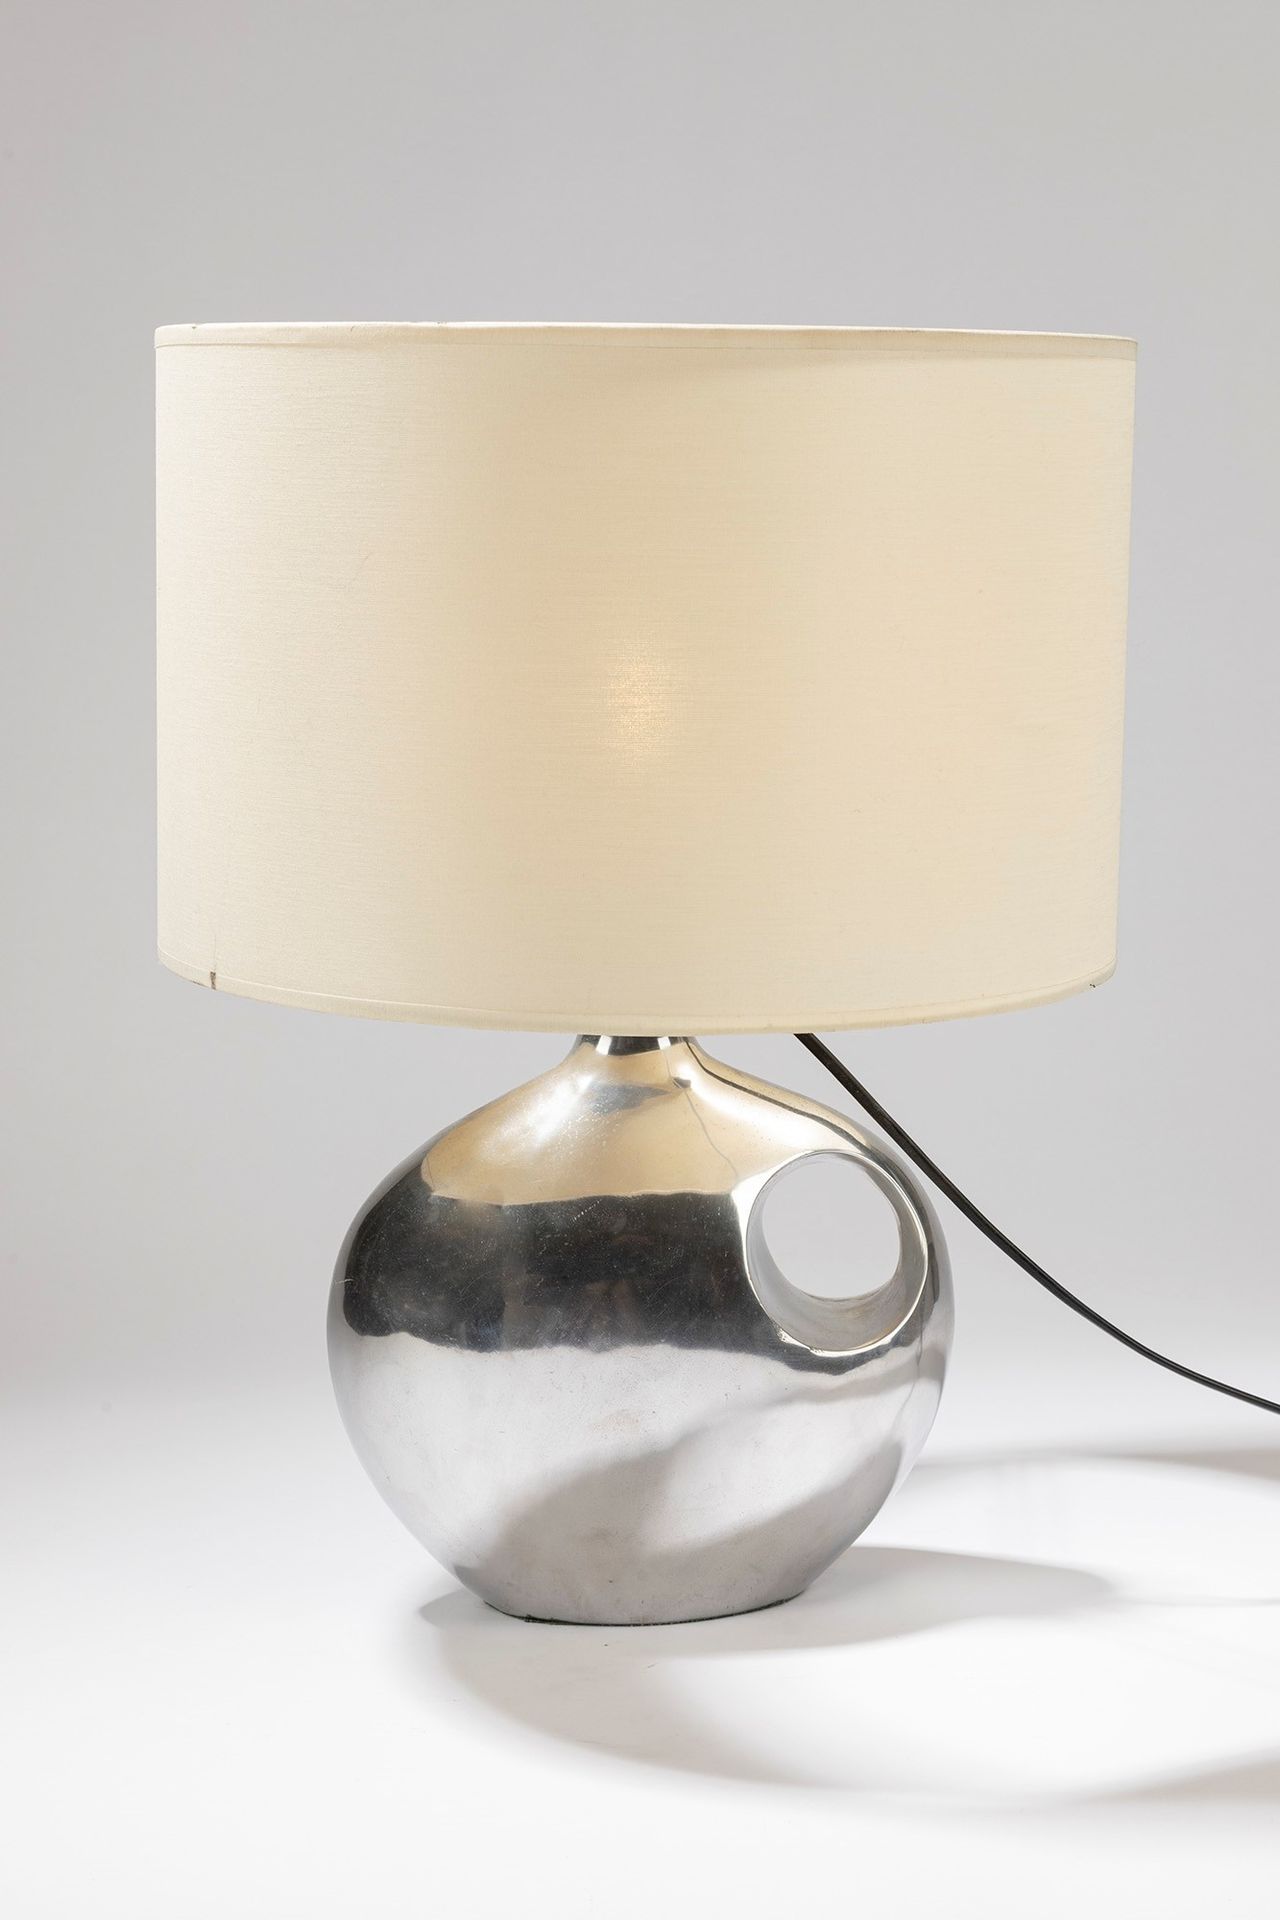 ITALIAN MANUFACTURE Lámpara de mesa, 1970 aprox.

Dm cm 35, H cm 49
metal cromad&hellip;